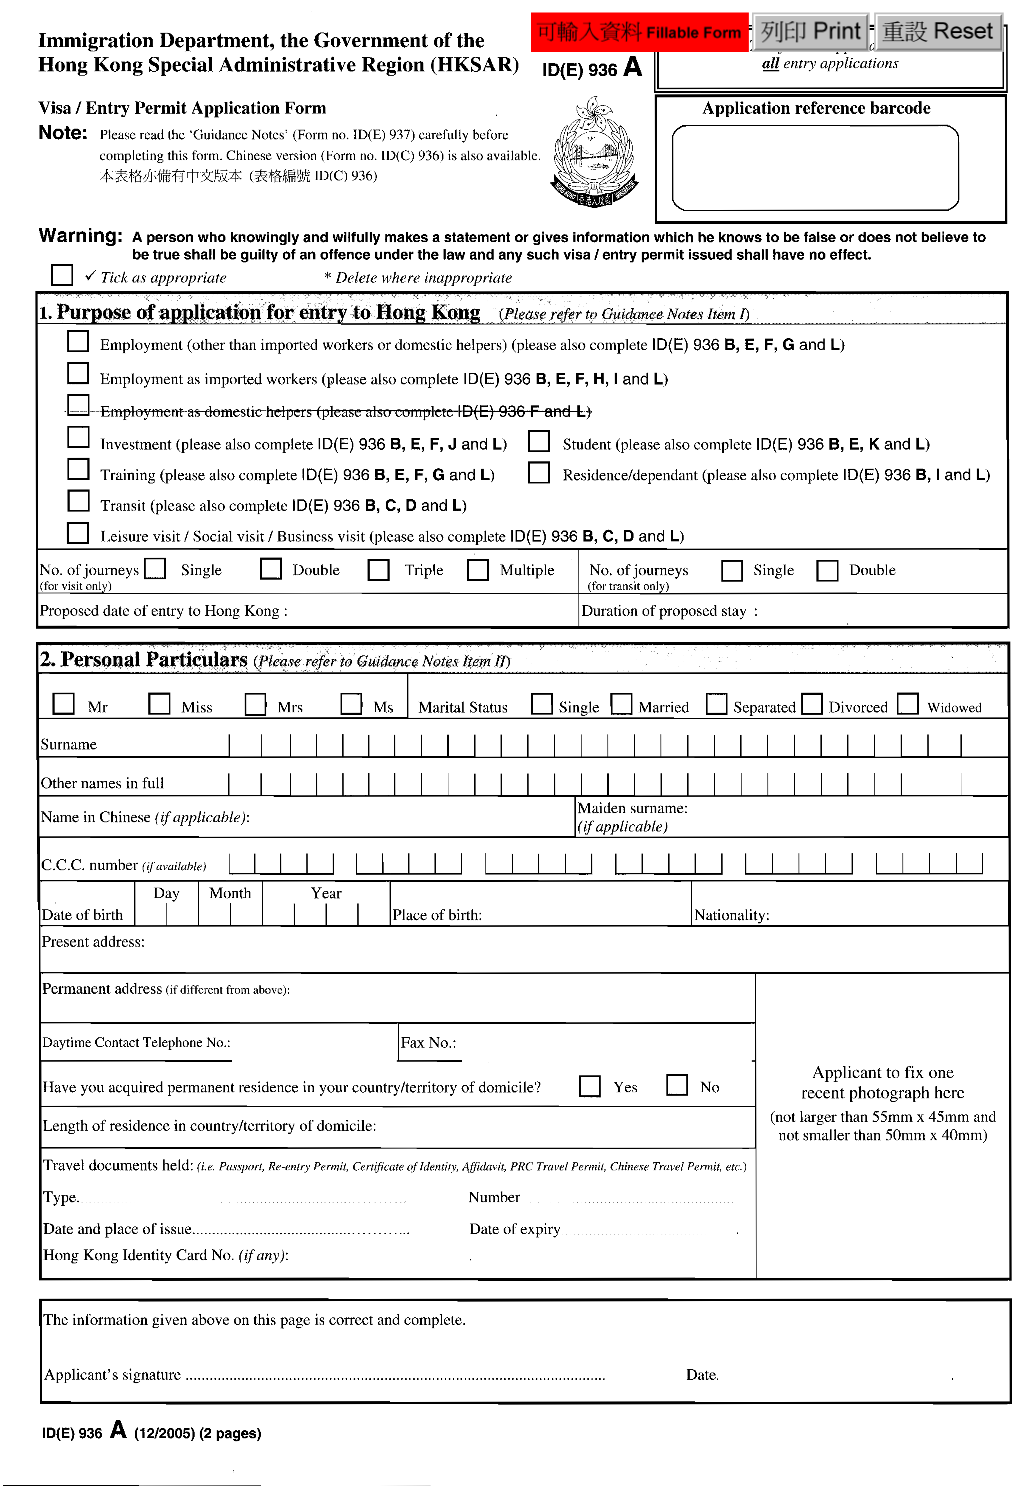 HK Visa Application Form